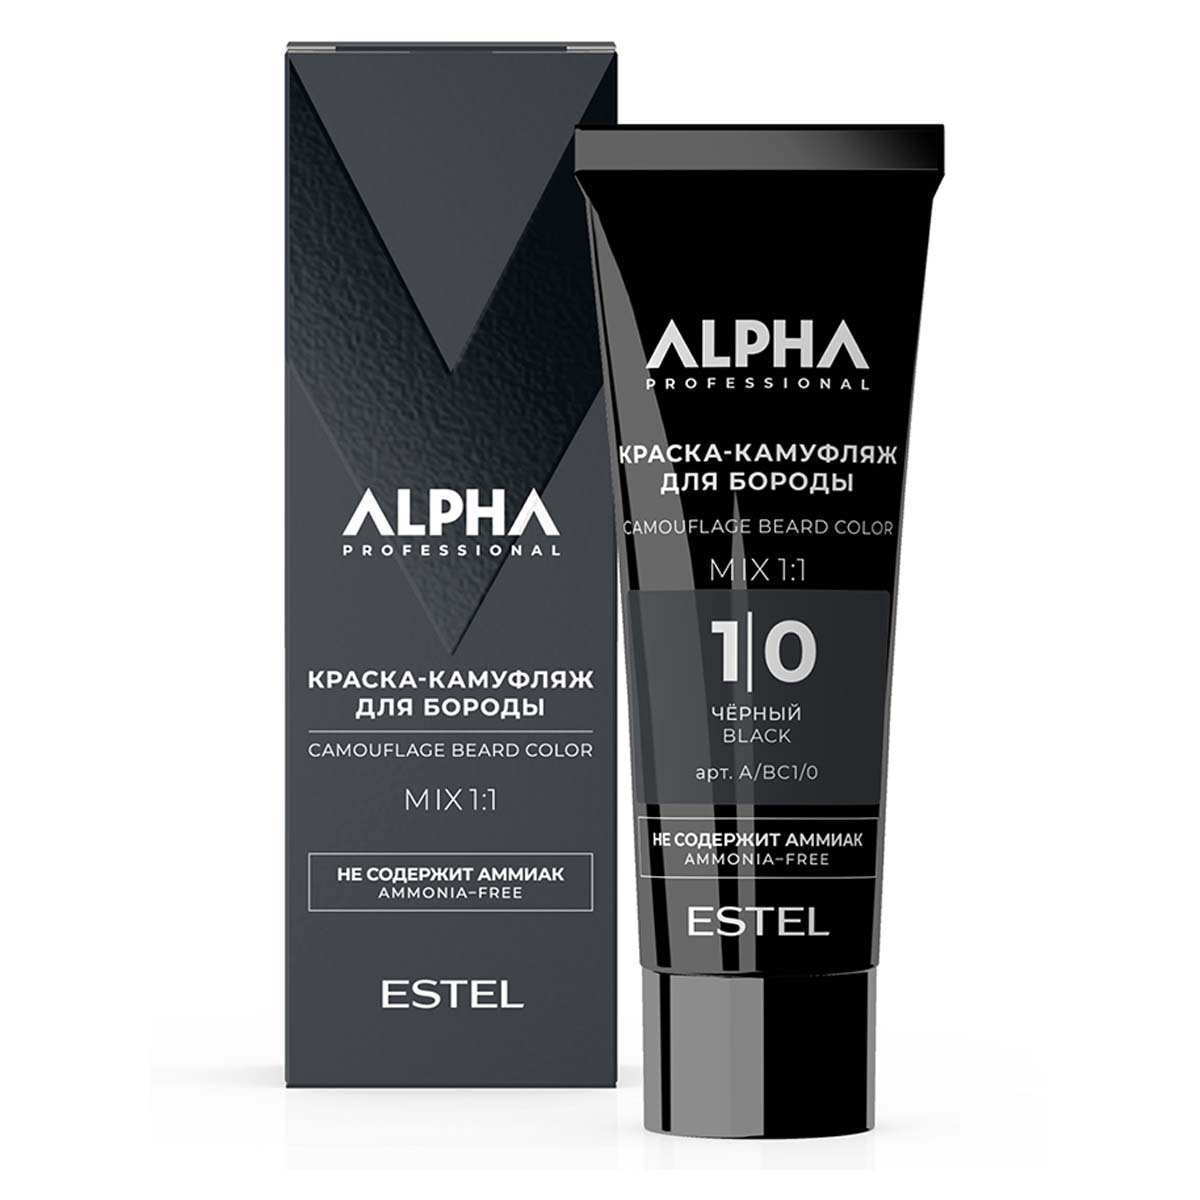 Крем-камуфляж ALPHA HOMME для окрашивания бороды ESTEL PROFESSIONAL 1/0 черный 40 мл охлаждающий крем перед бритьем alpha pro